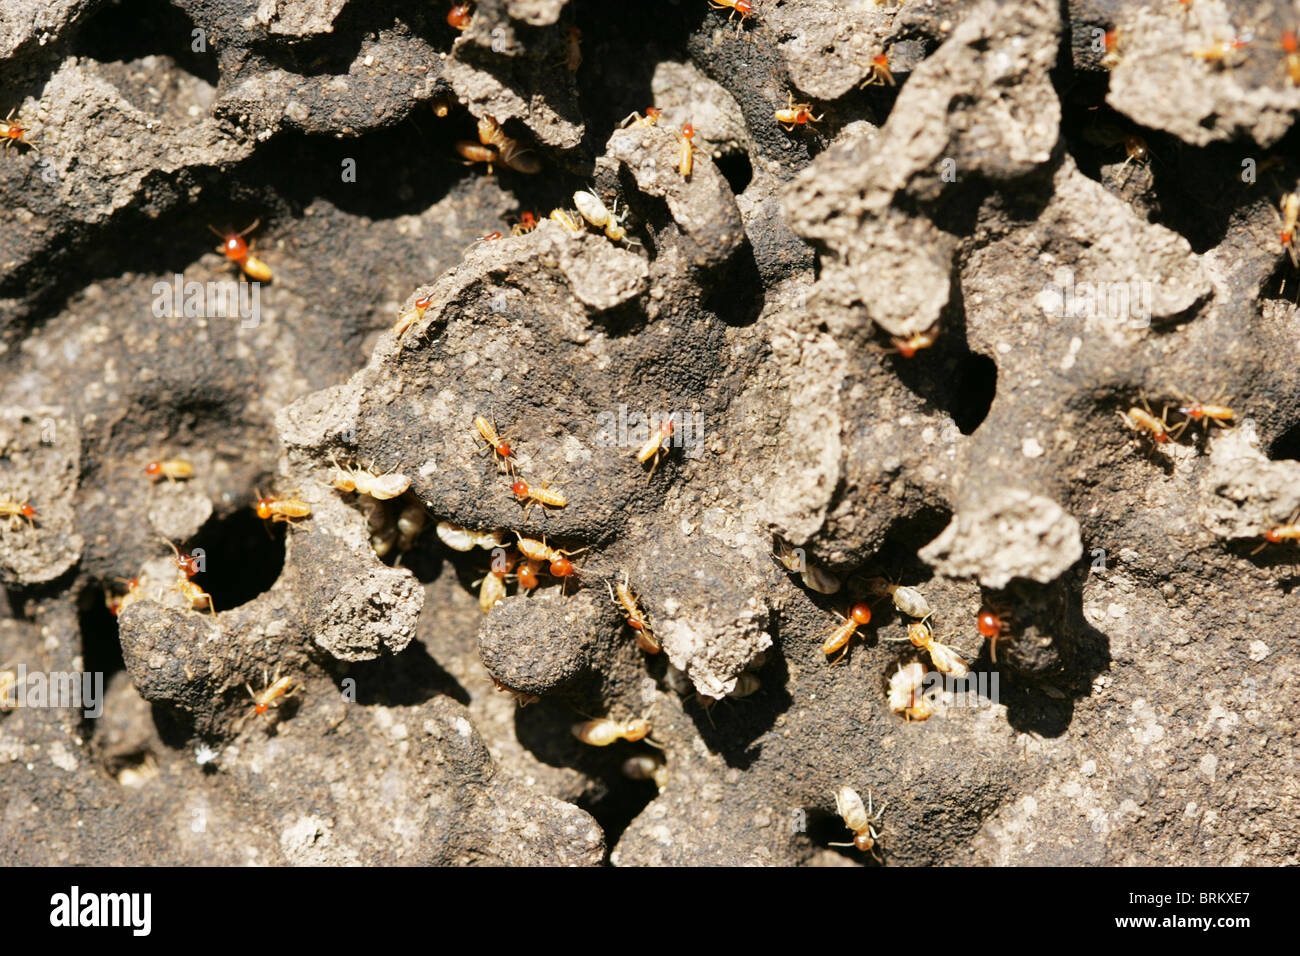 Les termites sur une section exposée de leur termitarium Banque D'Images